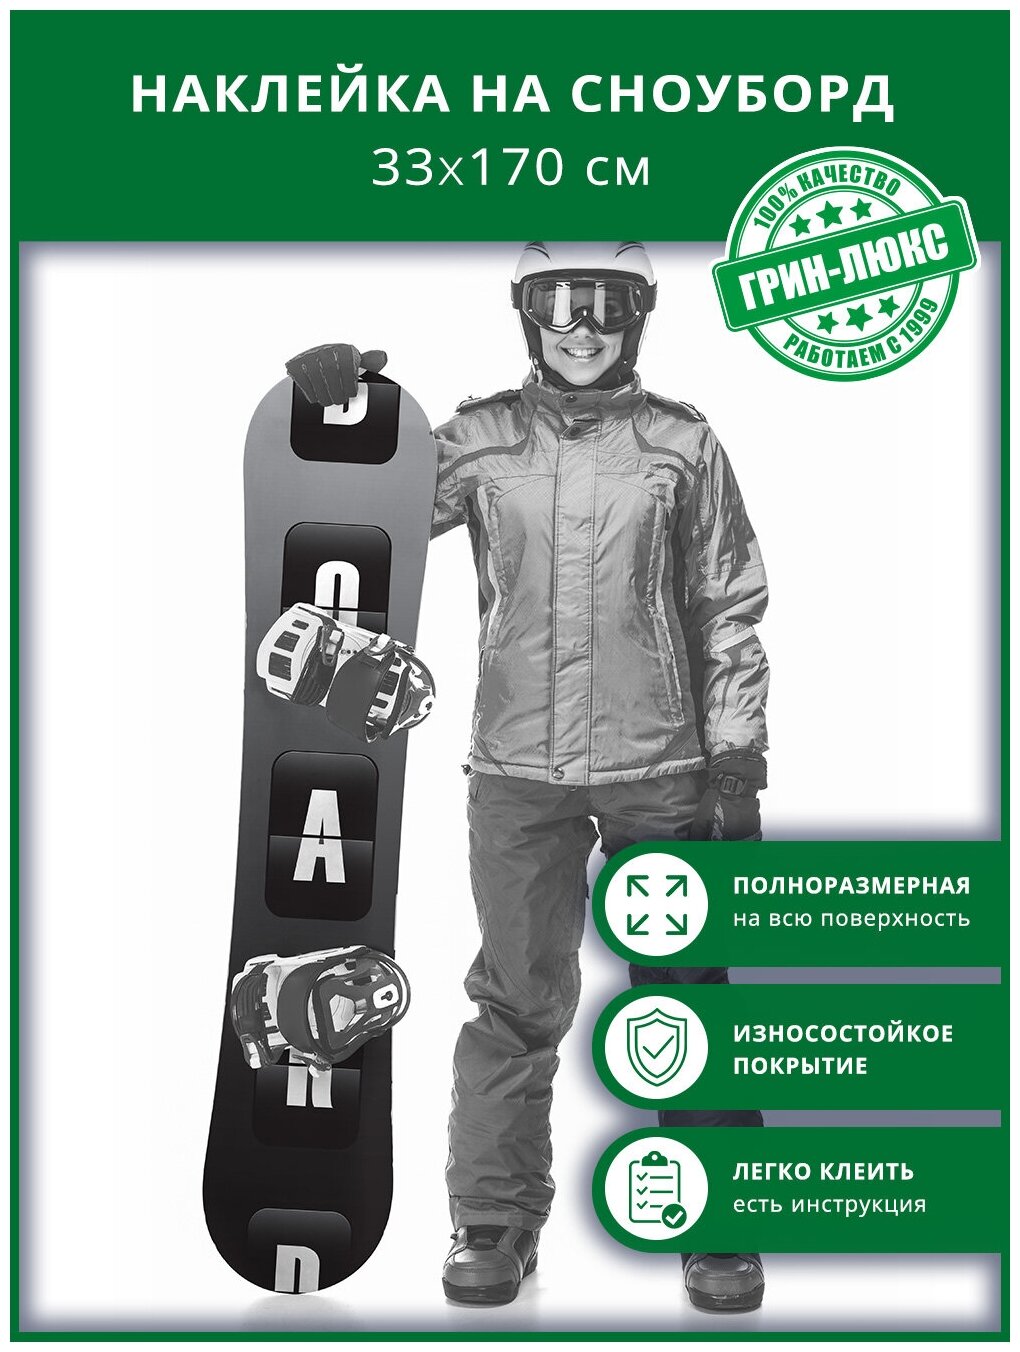 Наклейка на сноуборд с защитным глянцевым покрытием 33х170 см "BOARD доска"